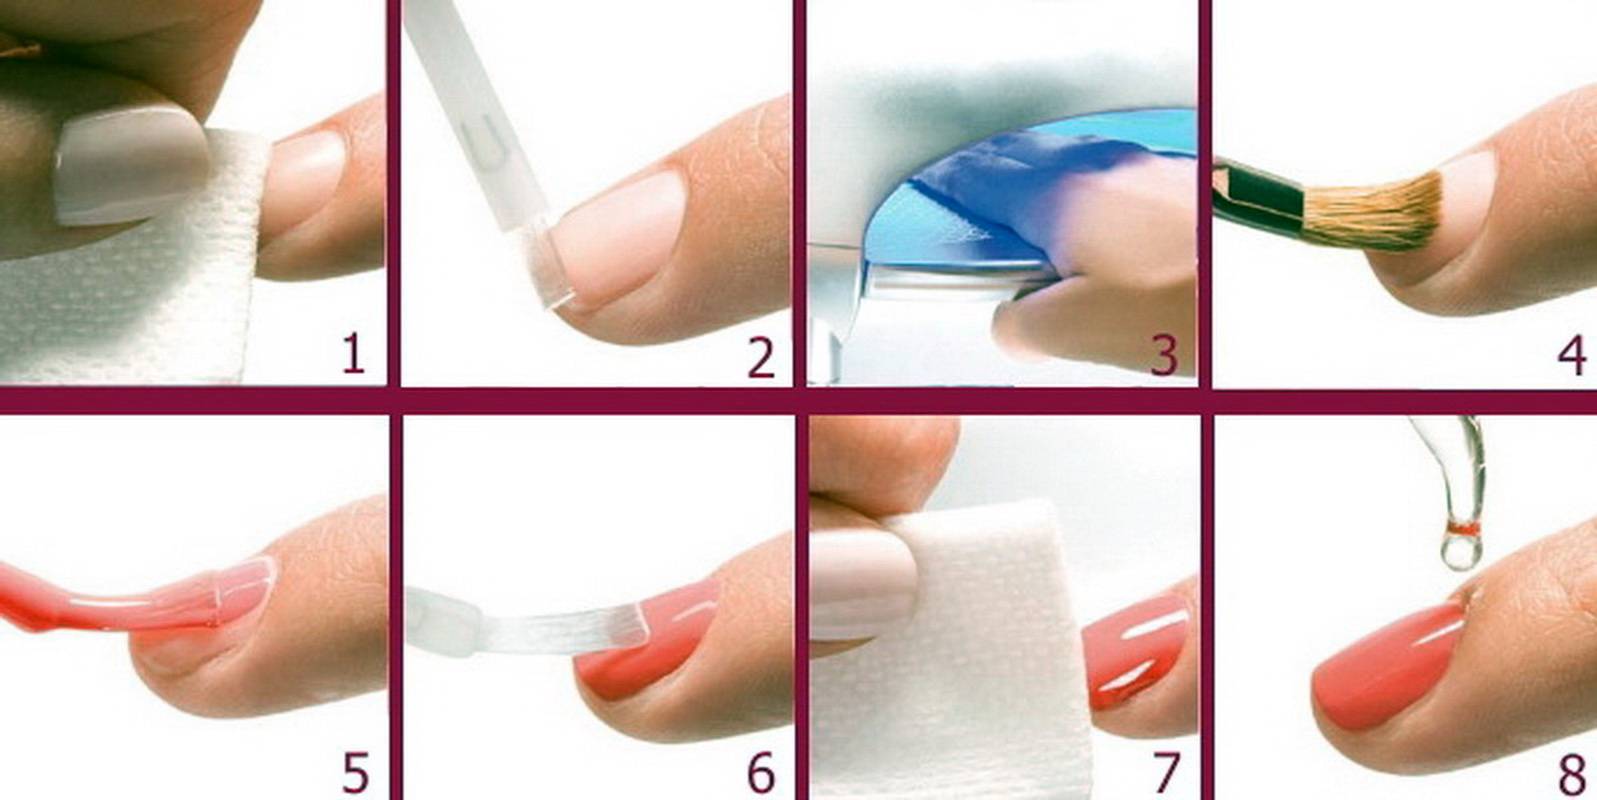 Укрепление ногтей биогелем: пошаговая инструкция, фото и видео